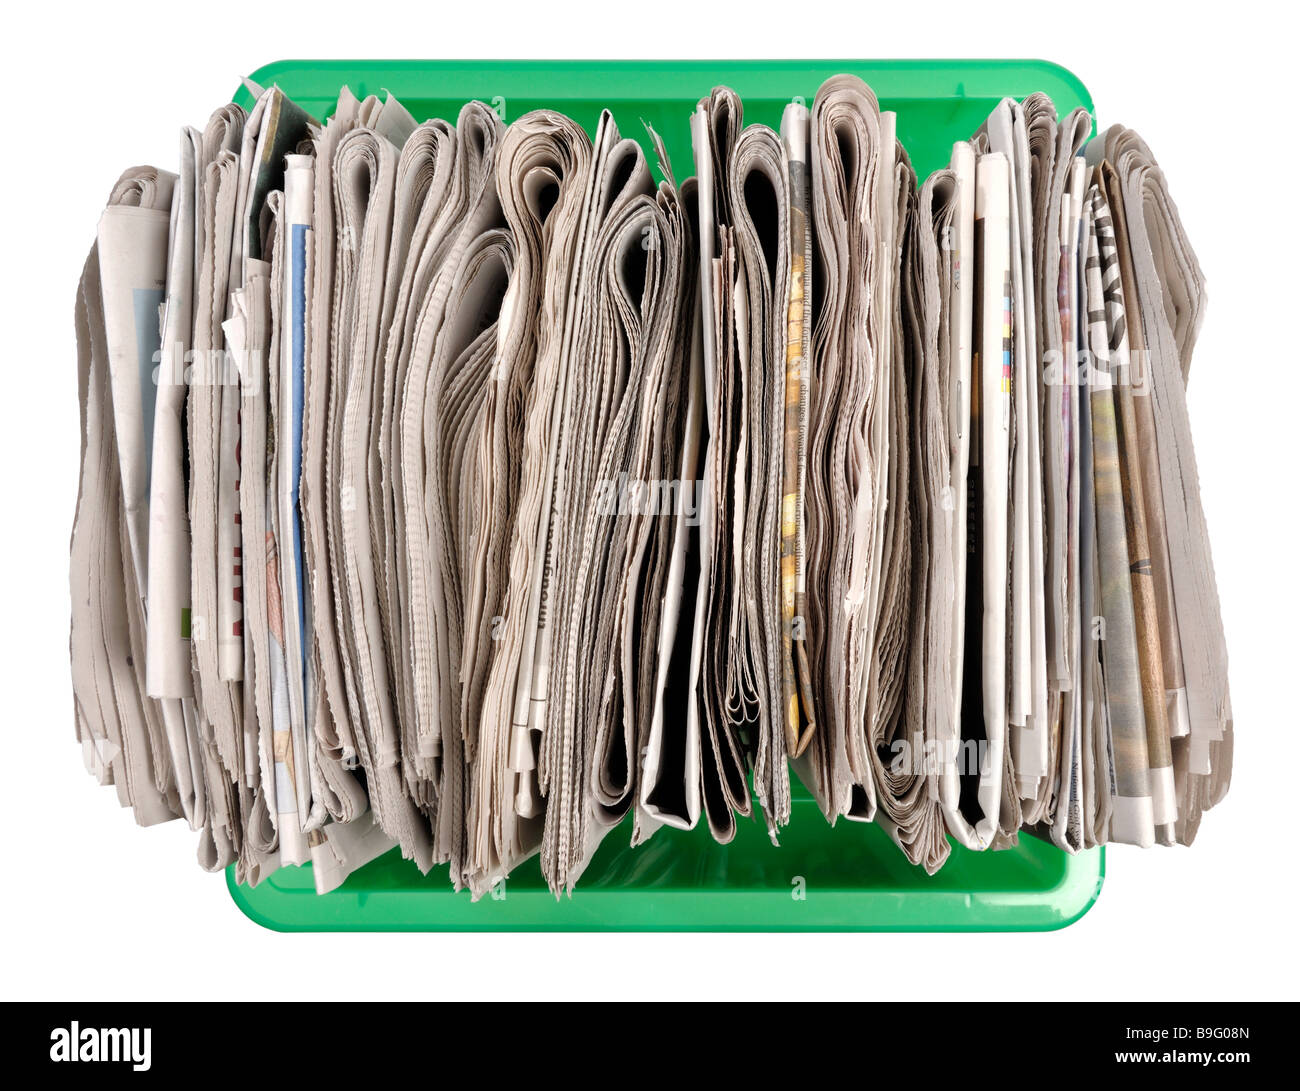 Periódicos viejos en la caja de reciclaje Foto de stock